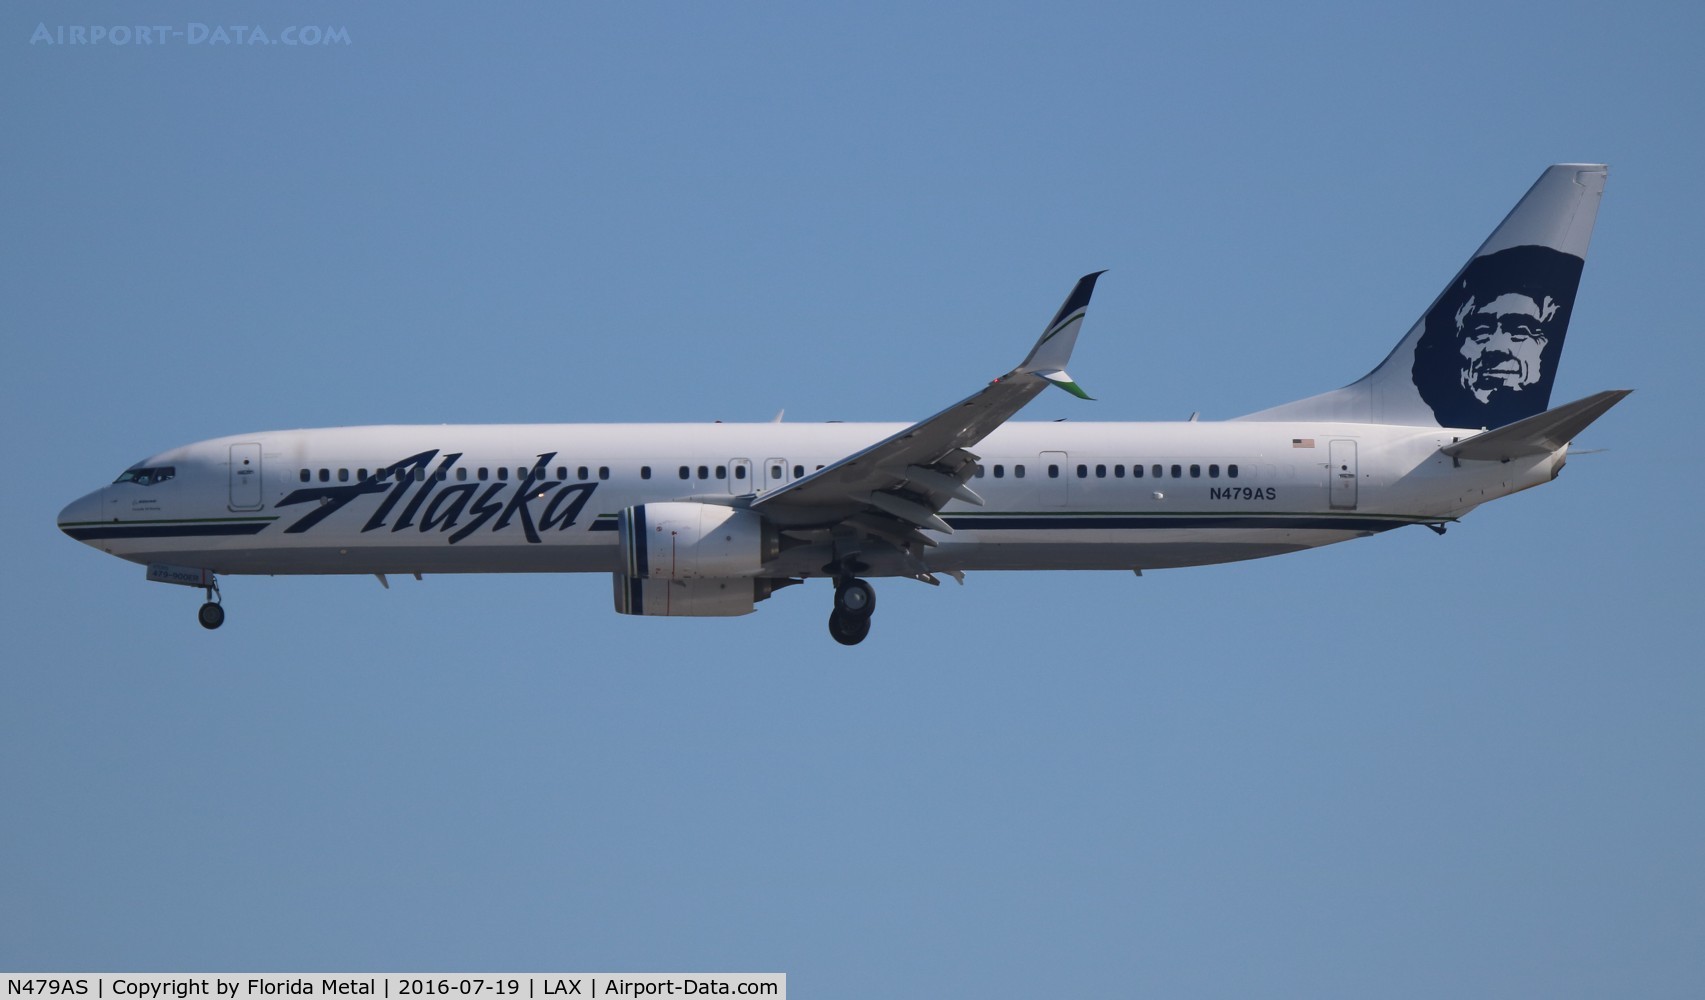 N479AS, 2015 Boeing 737-900/ER C/N 60576, Alaska